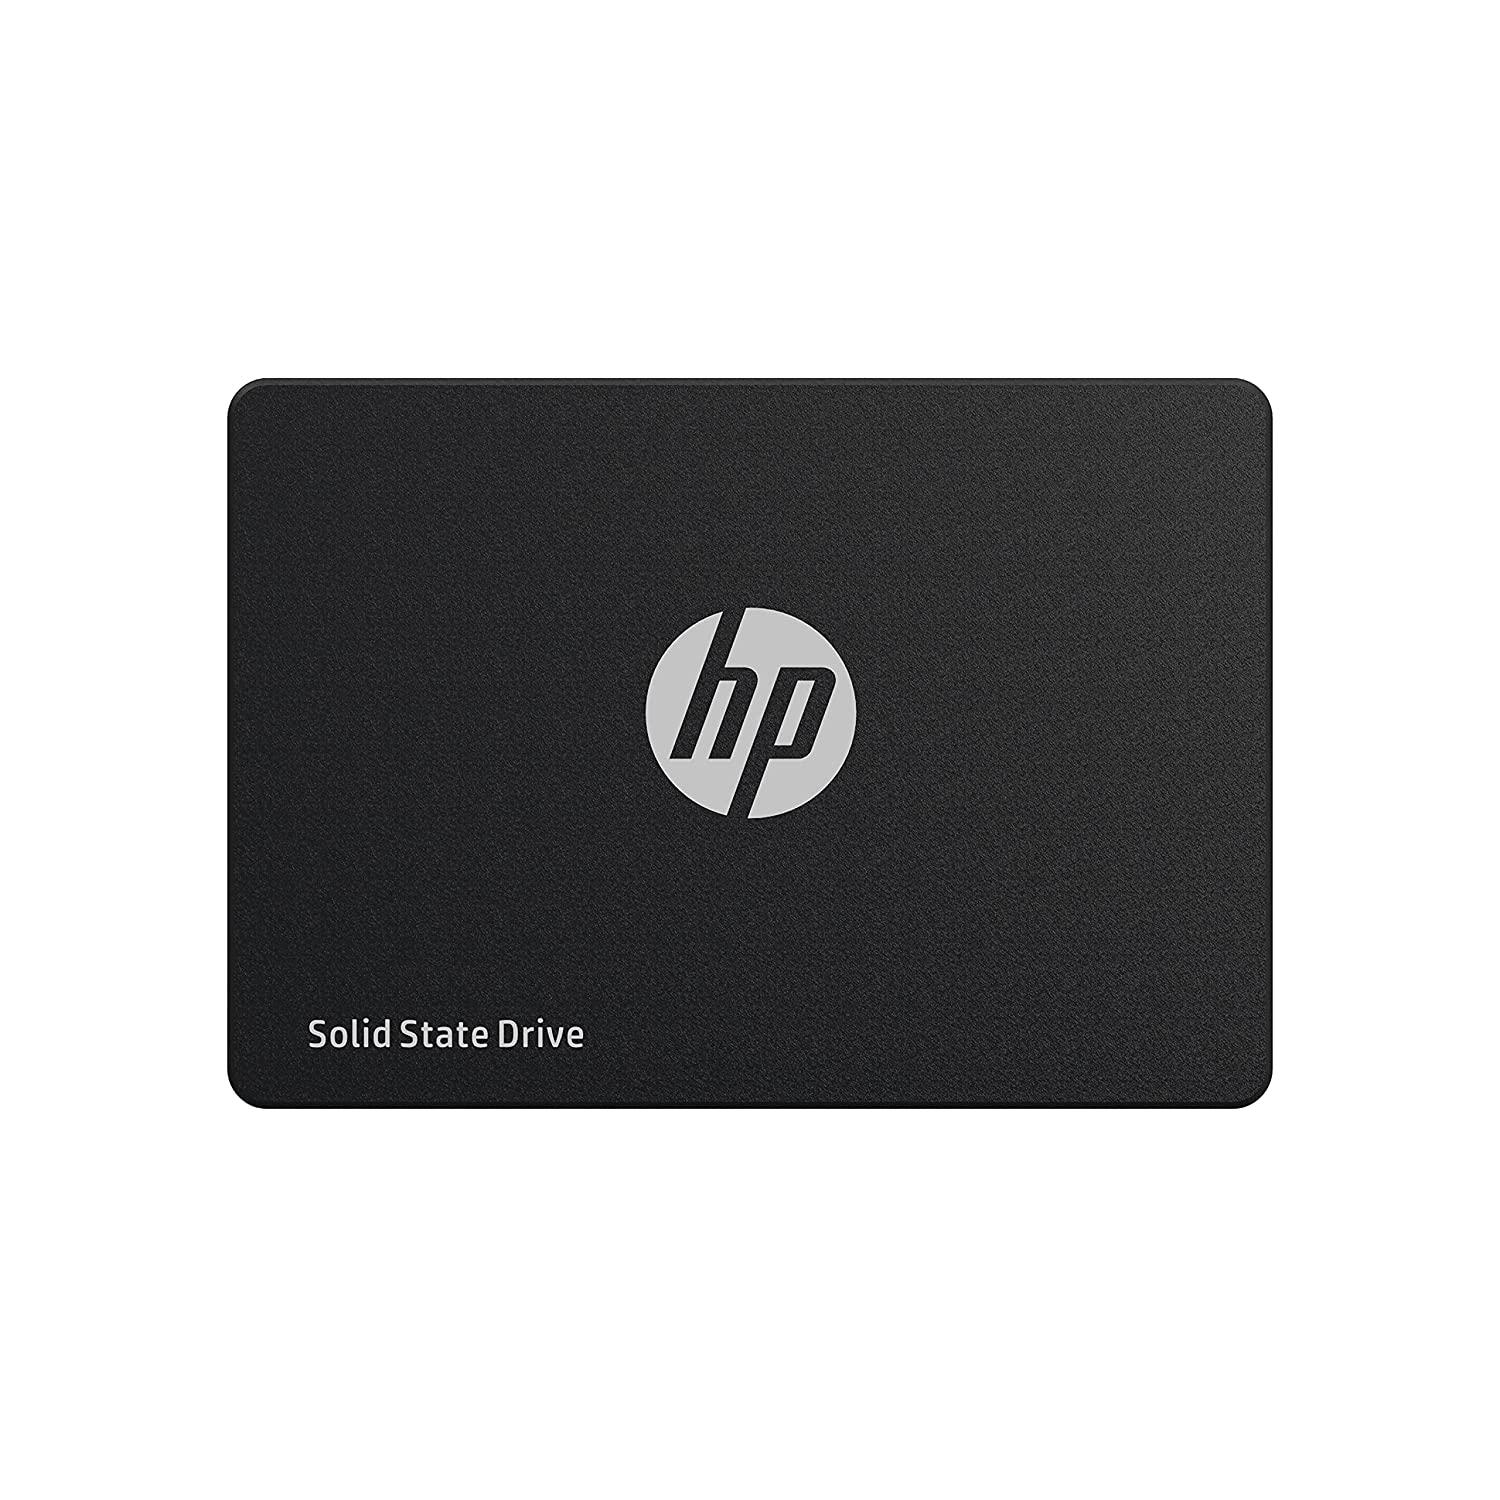 HP 345M9AA S650 SSD, 480 GB, SATA 3, 2.5"